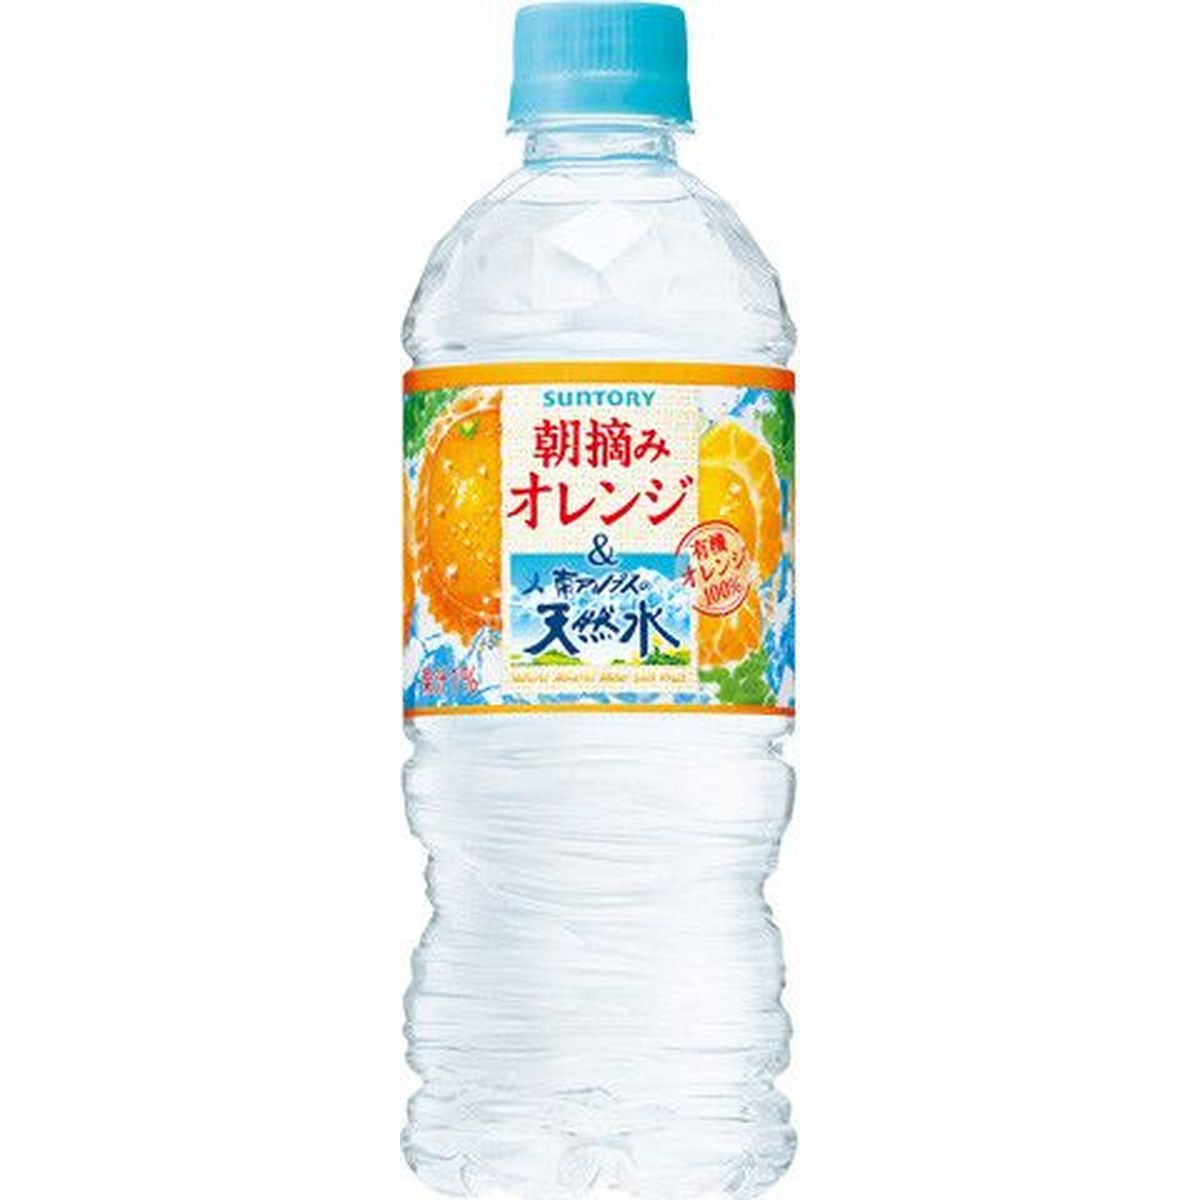 【24個入リ】サントリー 朝摘ミオレンジ＆天然水 冷凍兼用 ペット 540ml